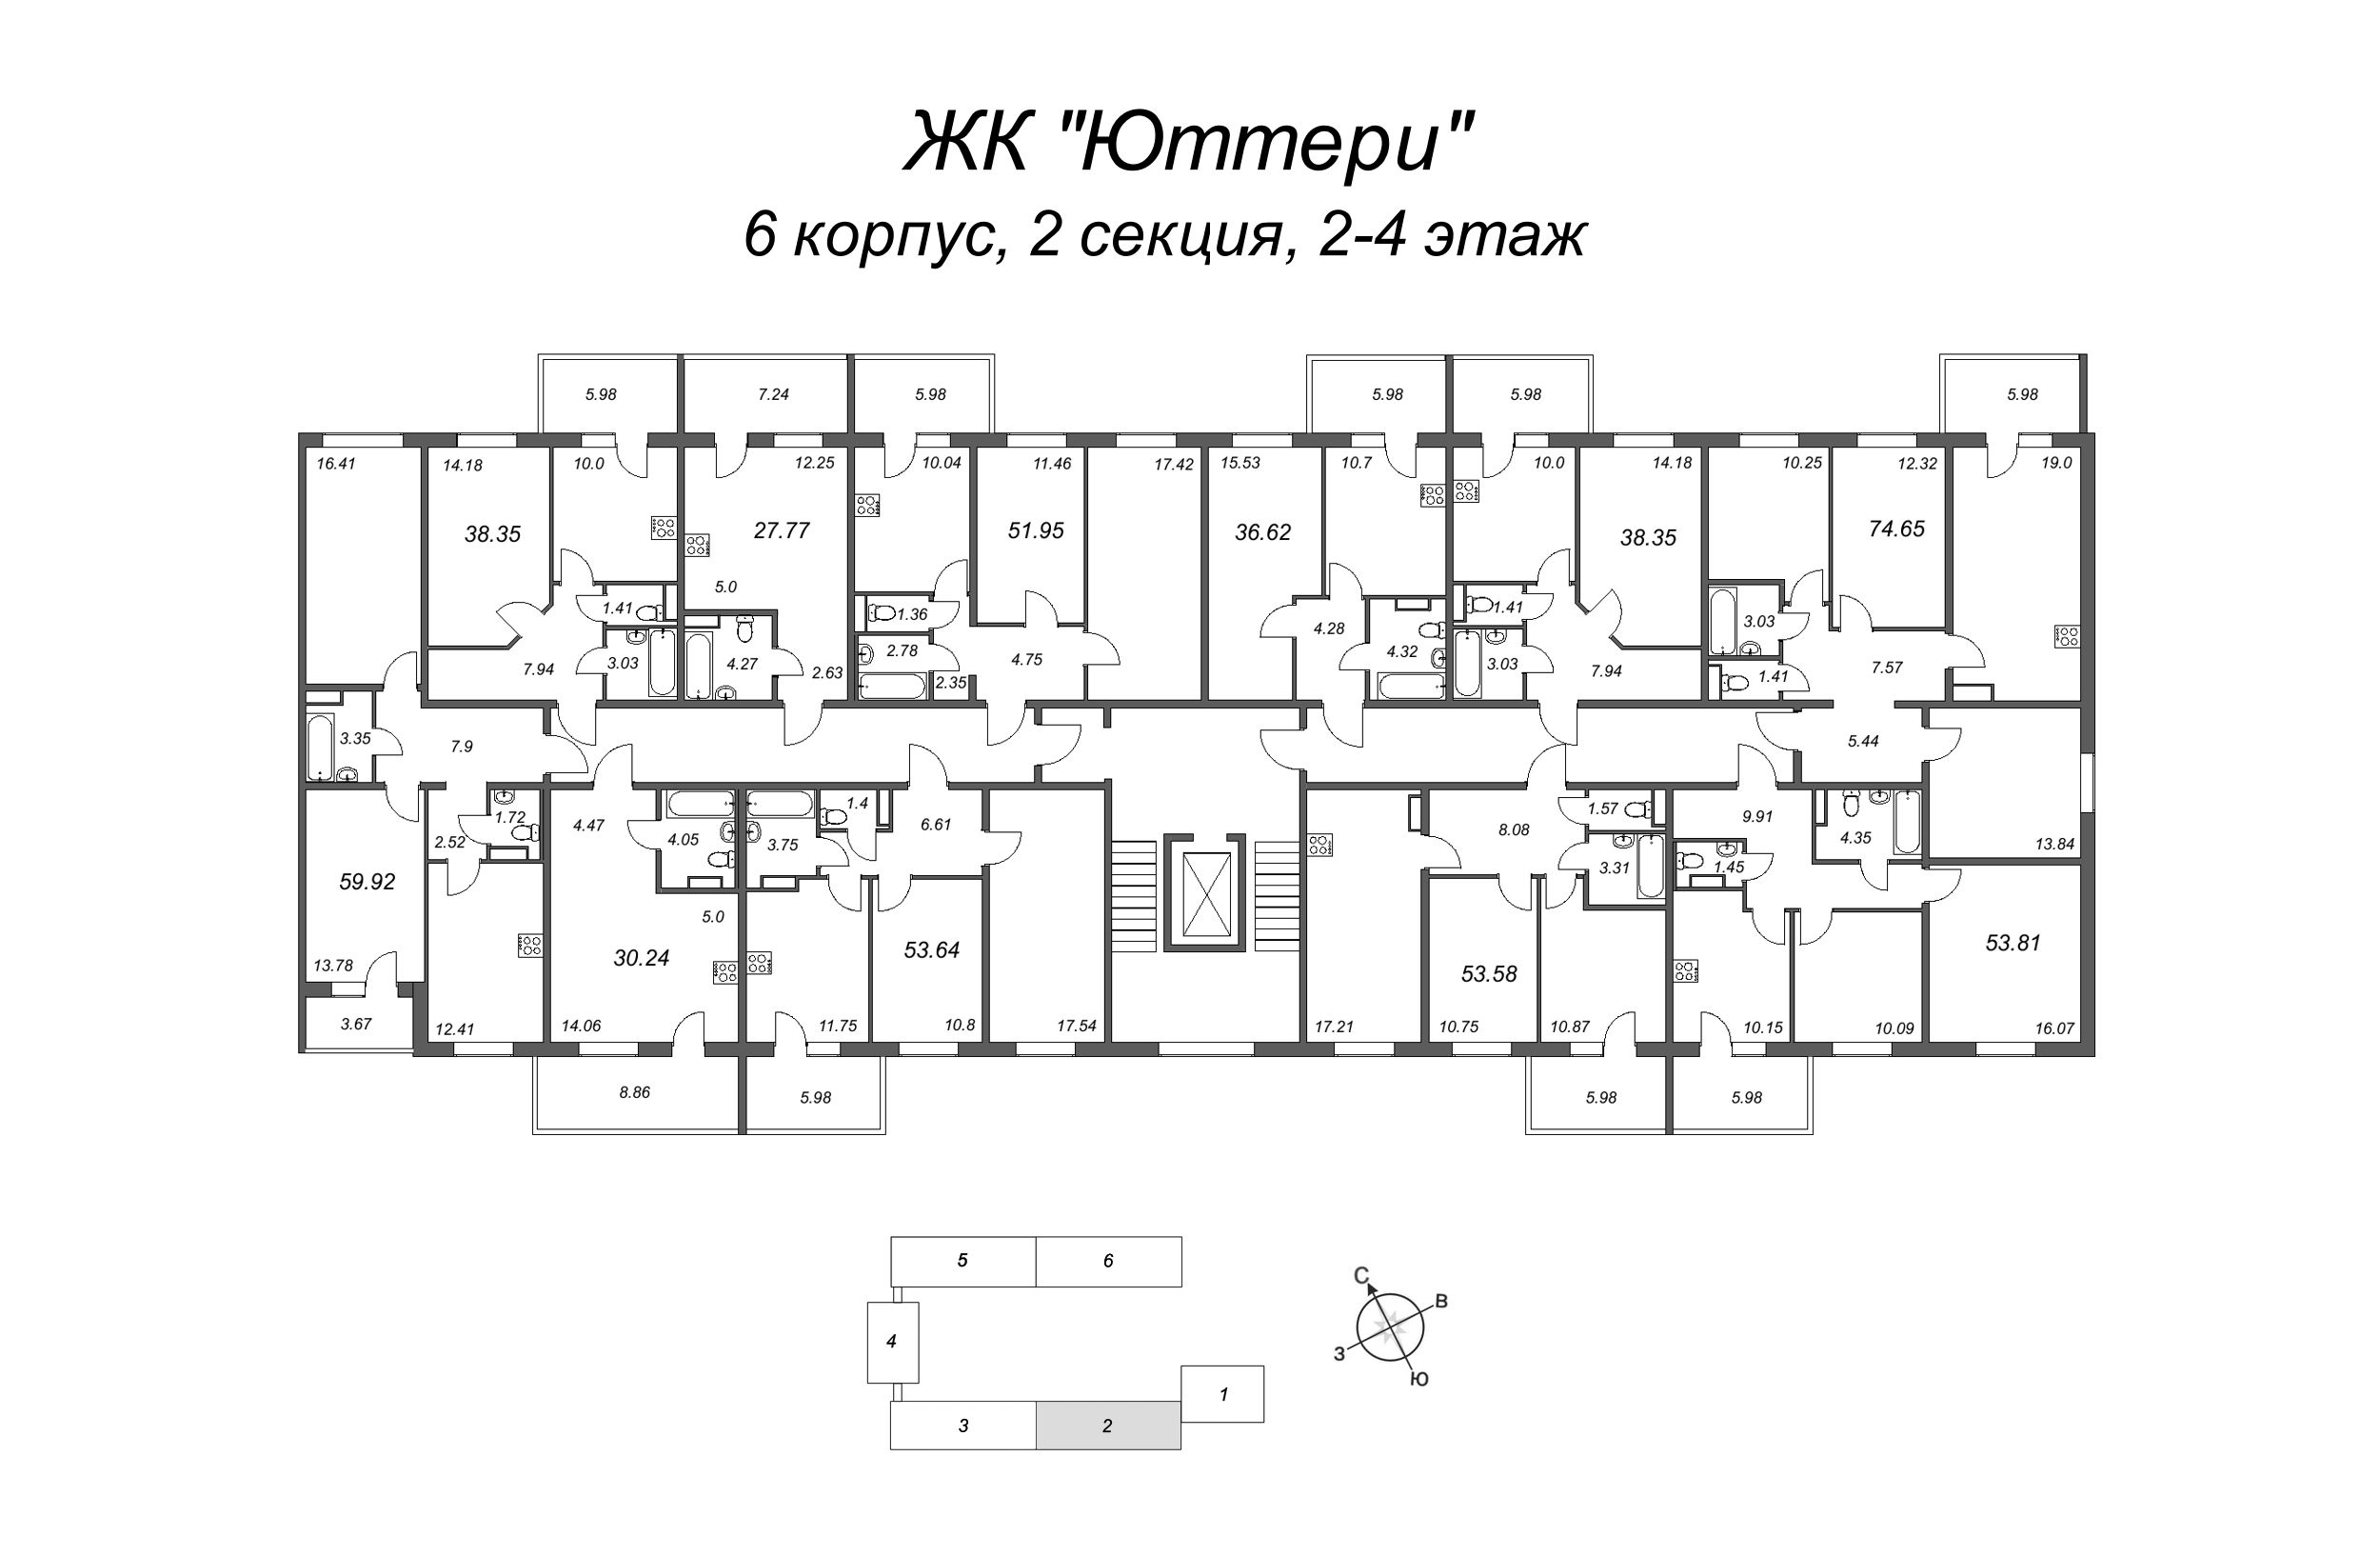 2-комнатная квартира, 52.02 м² в ЖК "Юттери" - планировка этажа